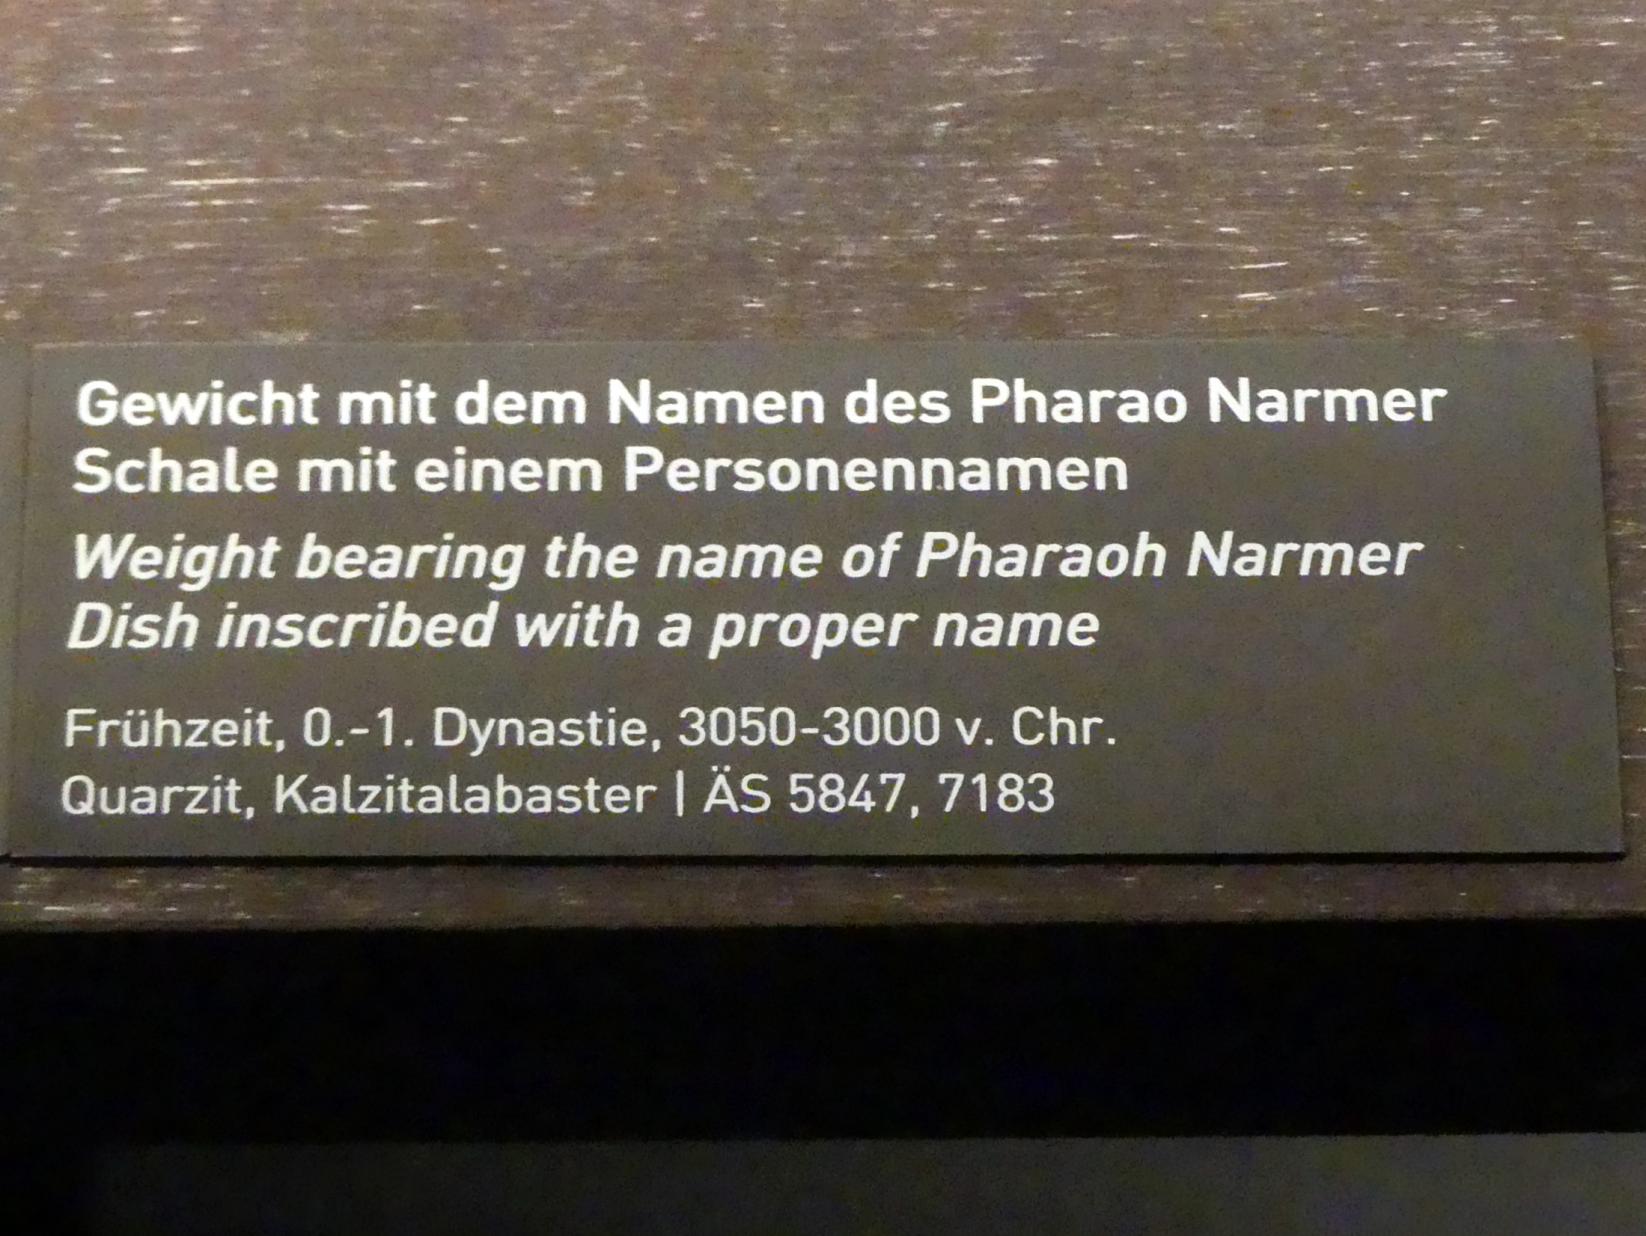 Gewicht mit dem Namen des Pharao Narmer, 1. Dynastie, Undatiert, 3050 - 3000 v. Chr., Bild 2/2